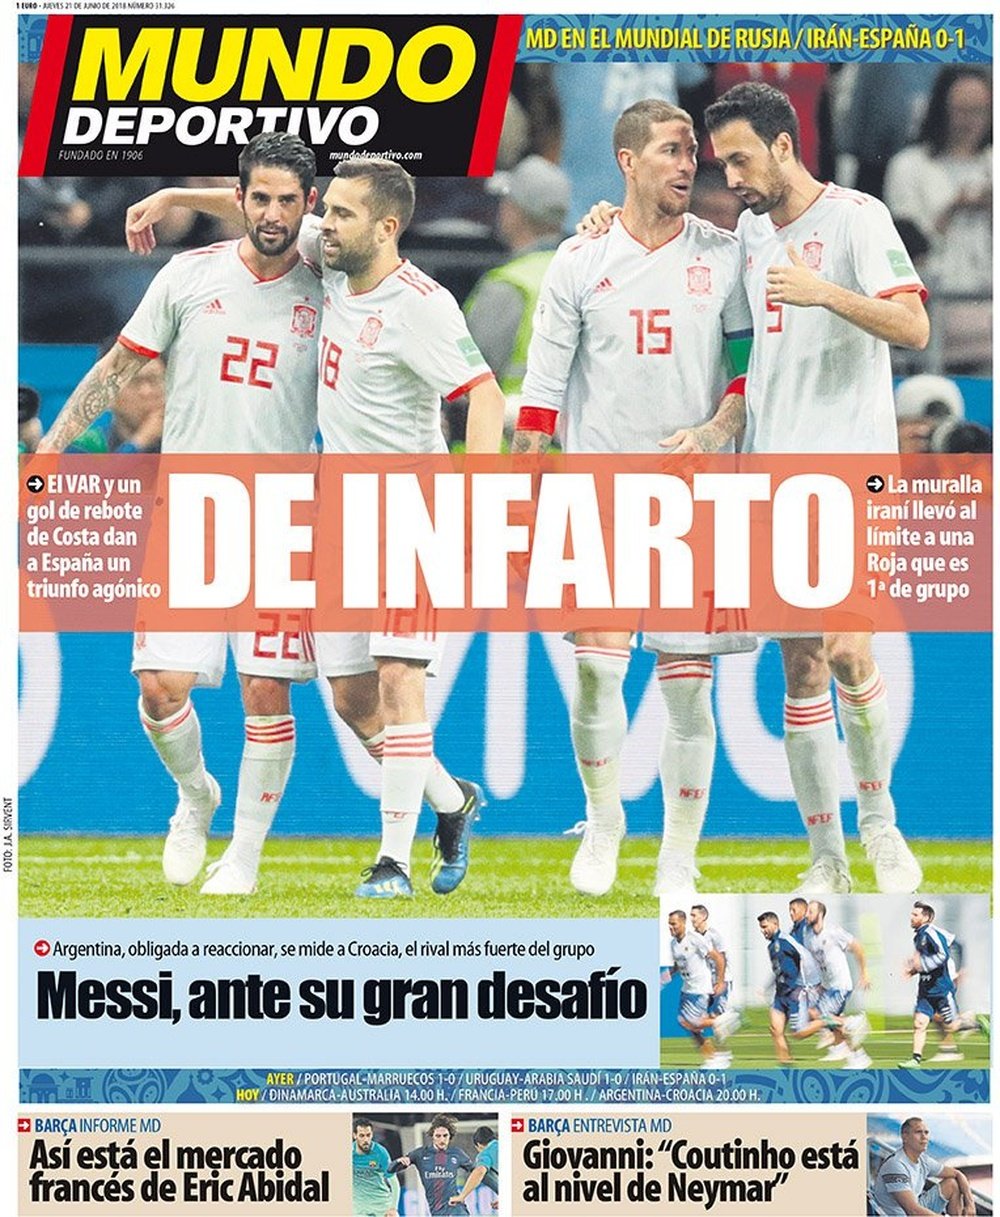 Capa do jornal Mundo Deportivo de 21-06-18. Mundo Deportivo